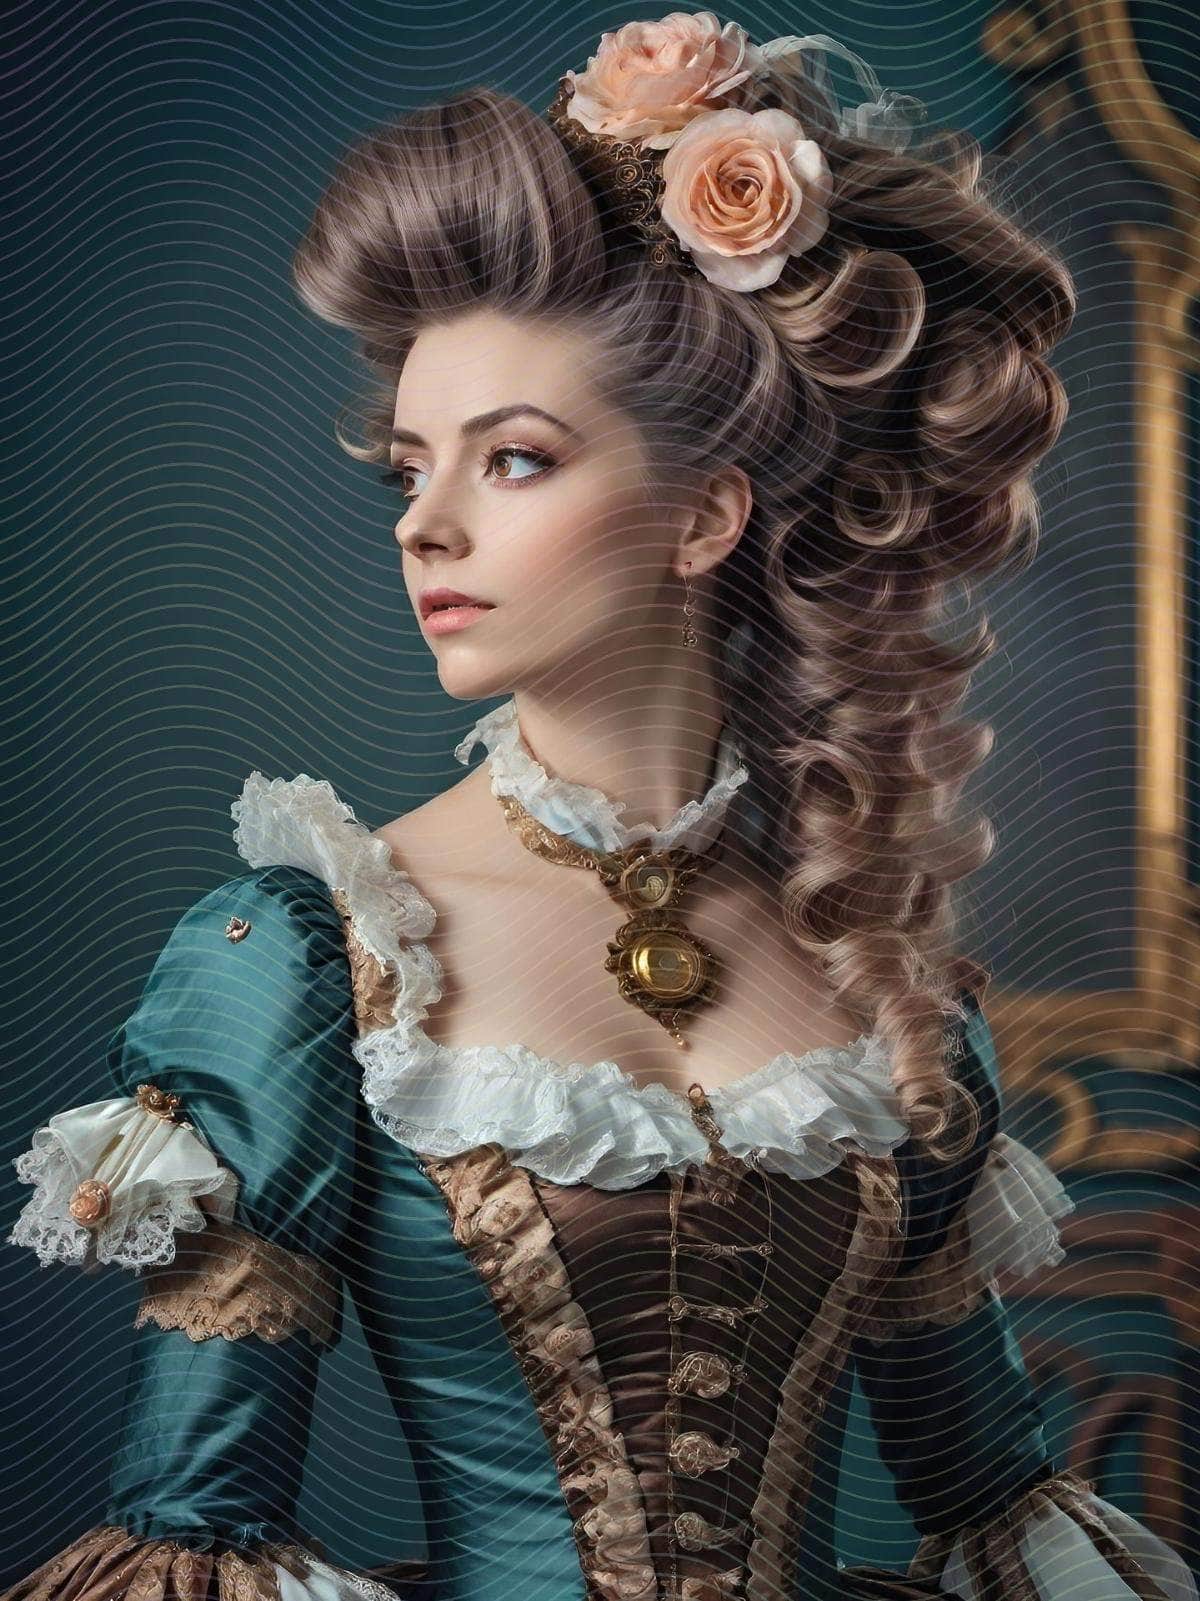 A Rococo-Style Fantasy Woman Portrait